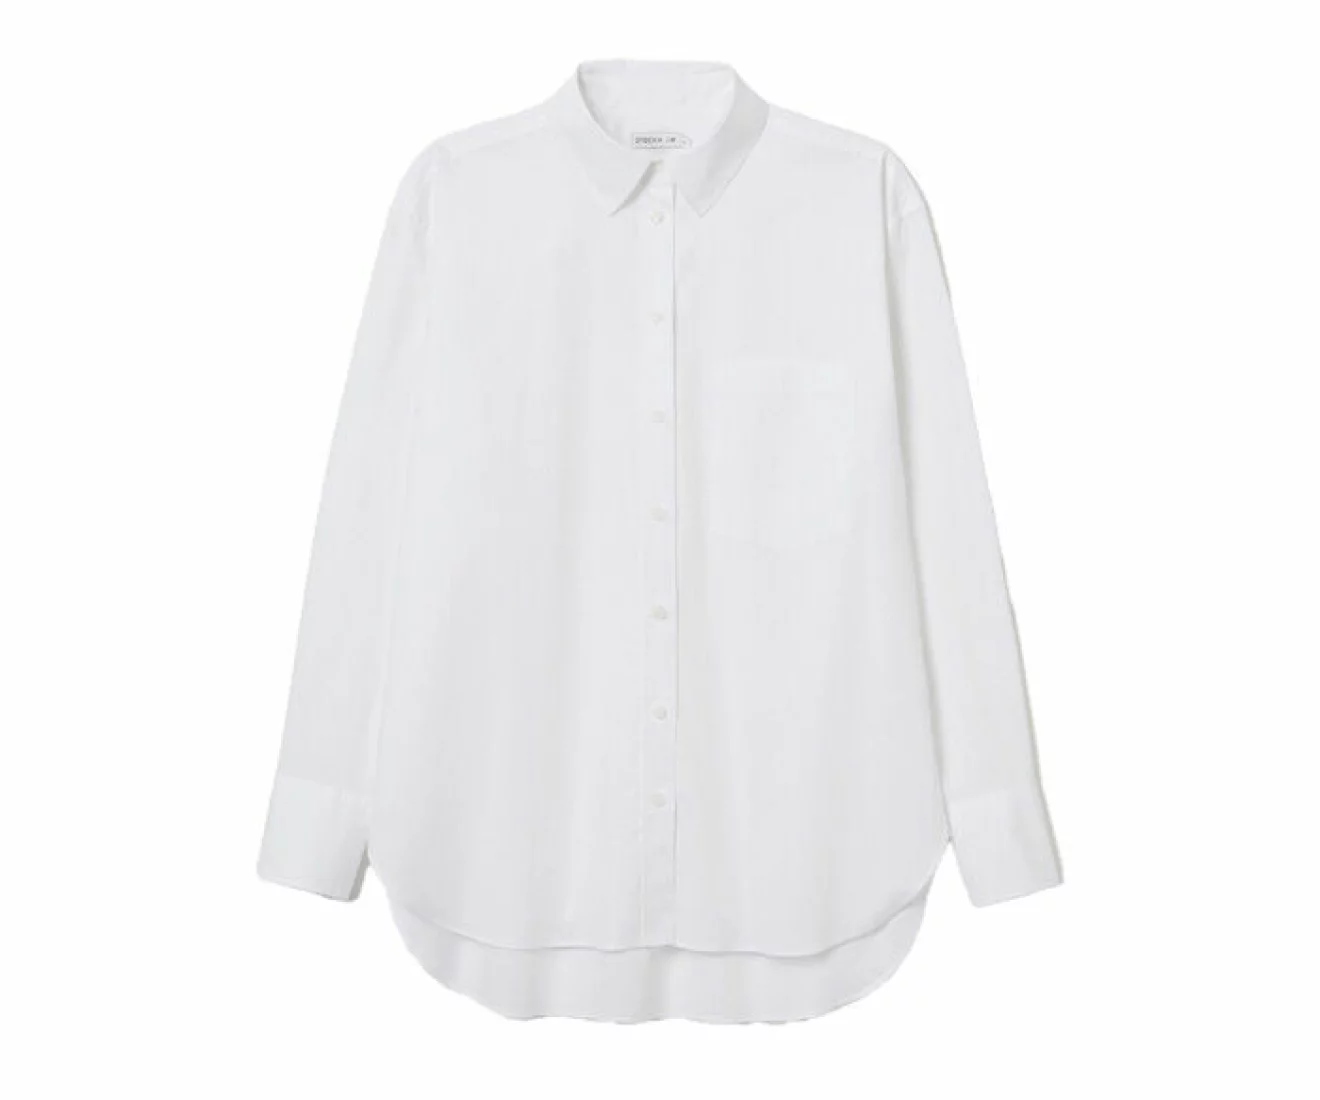 oversize skjorta i vit nyans gjord i vävd bomullspoplin från Stockh lm